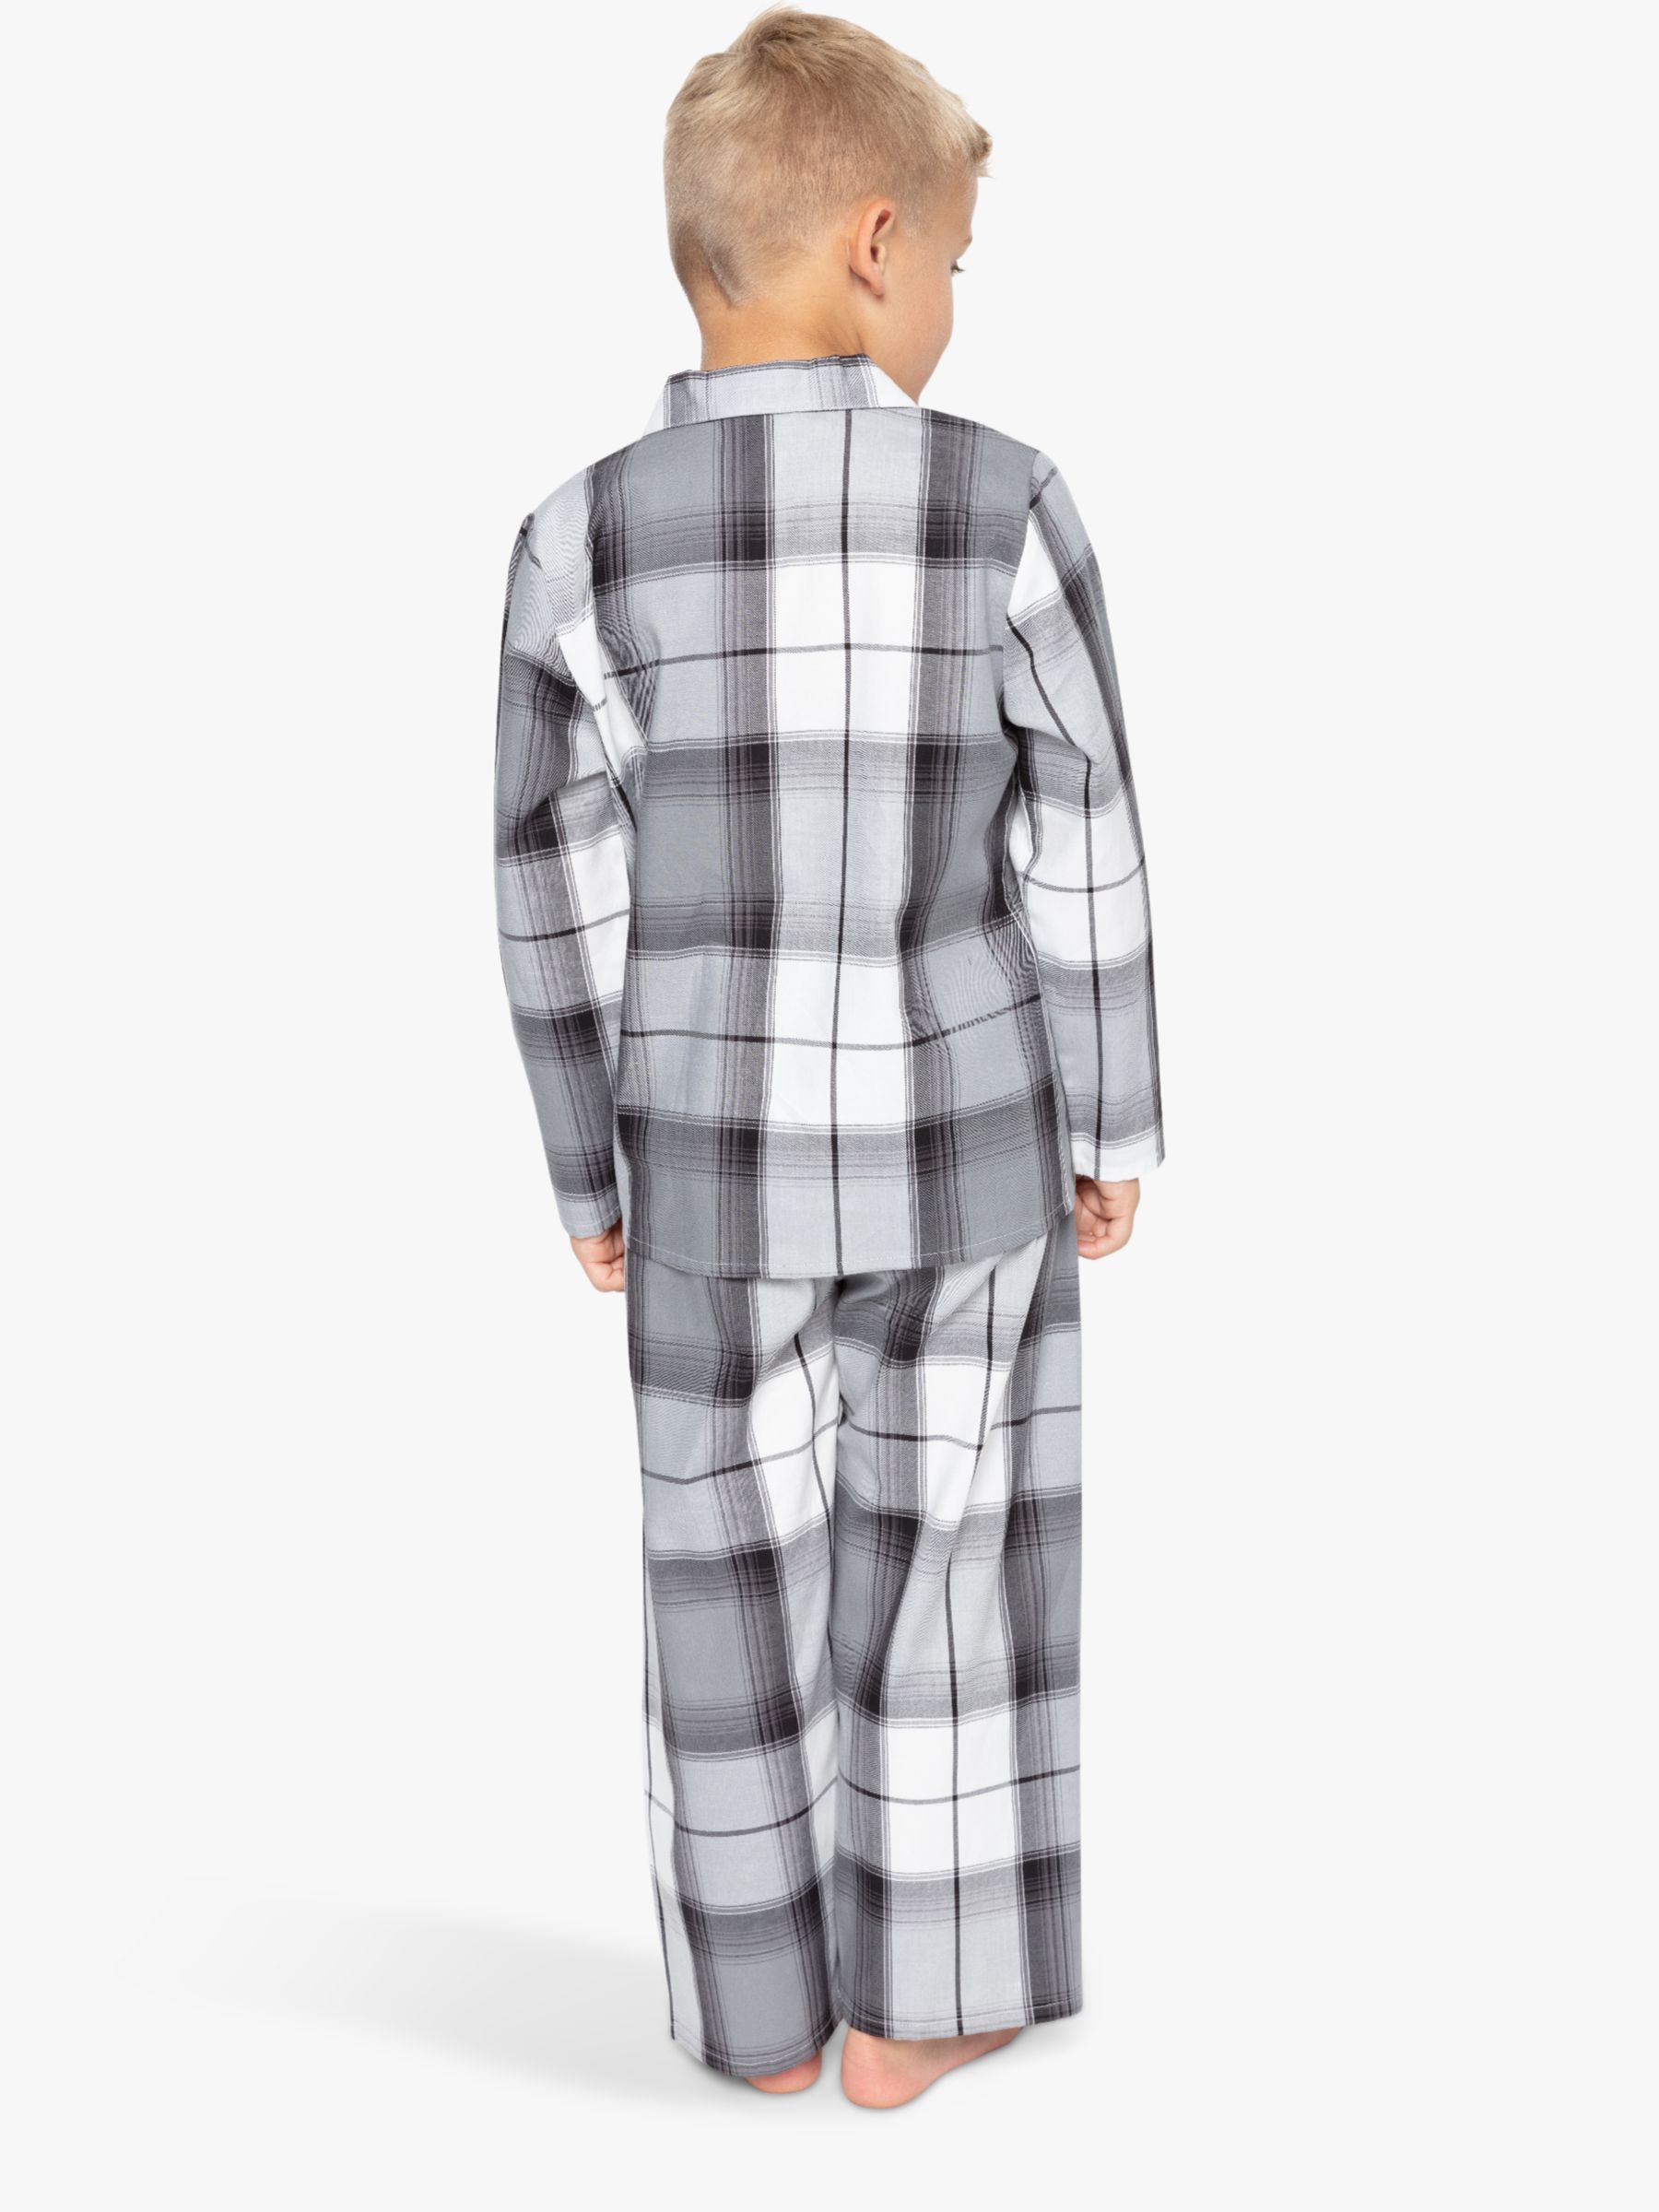 Cyberjammies Kids' Samuel Check Print Pyjamas, Grey, 2-3 years